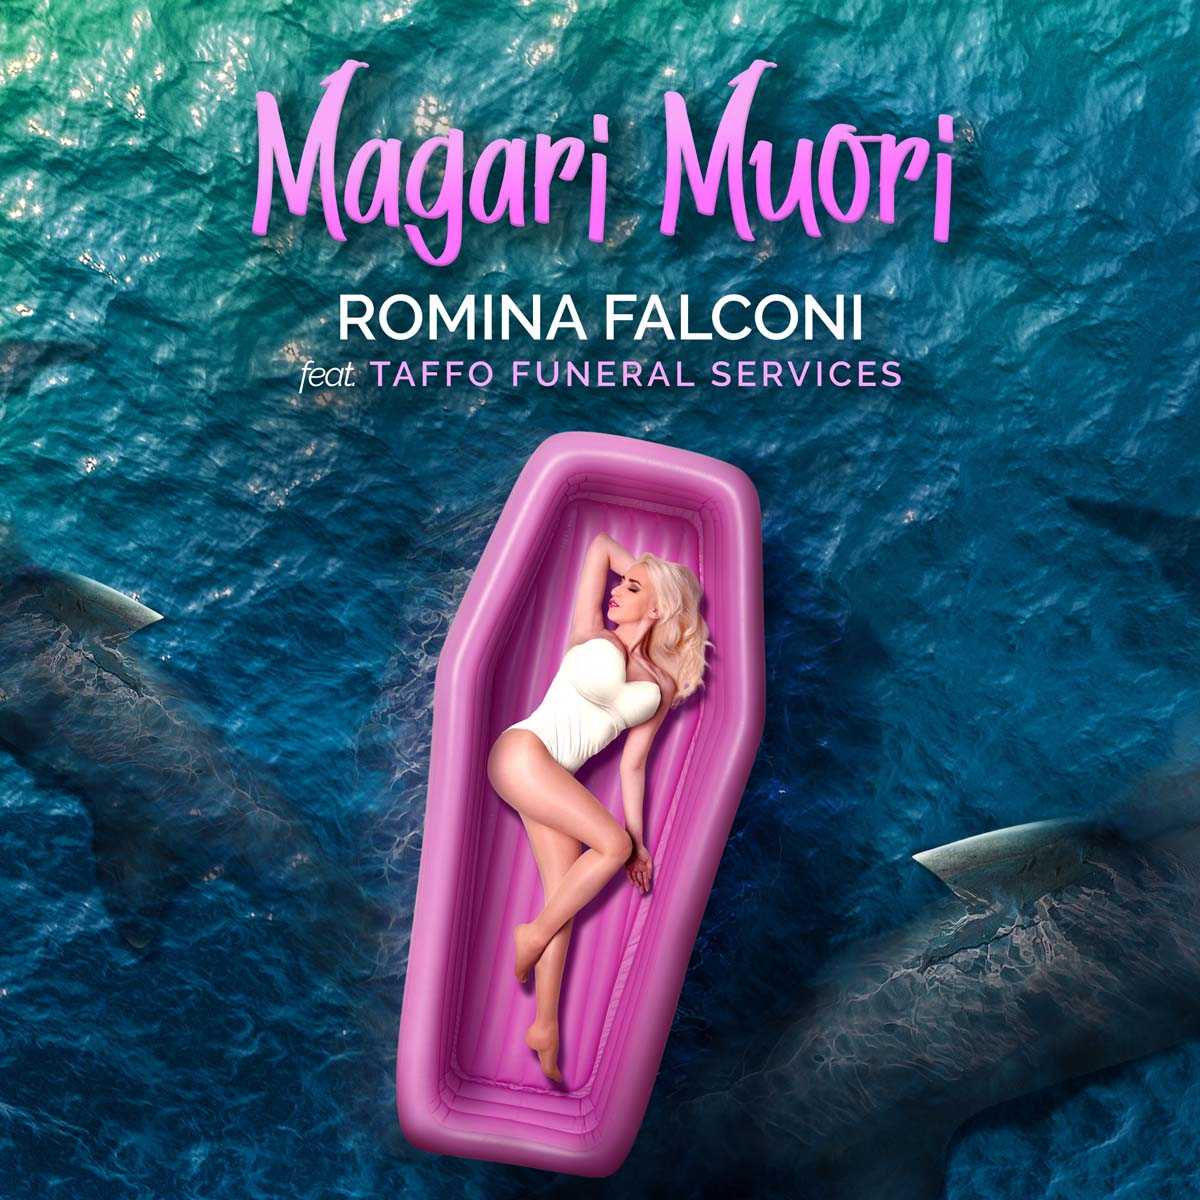 Romina Falconi Taffo Funeral Service Magari Muori